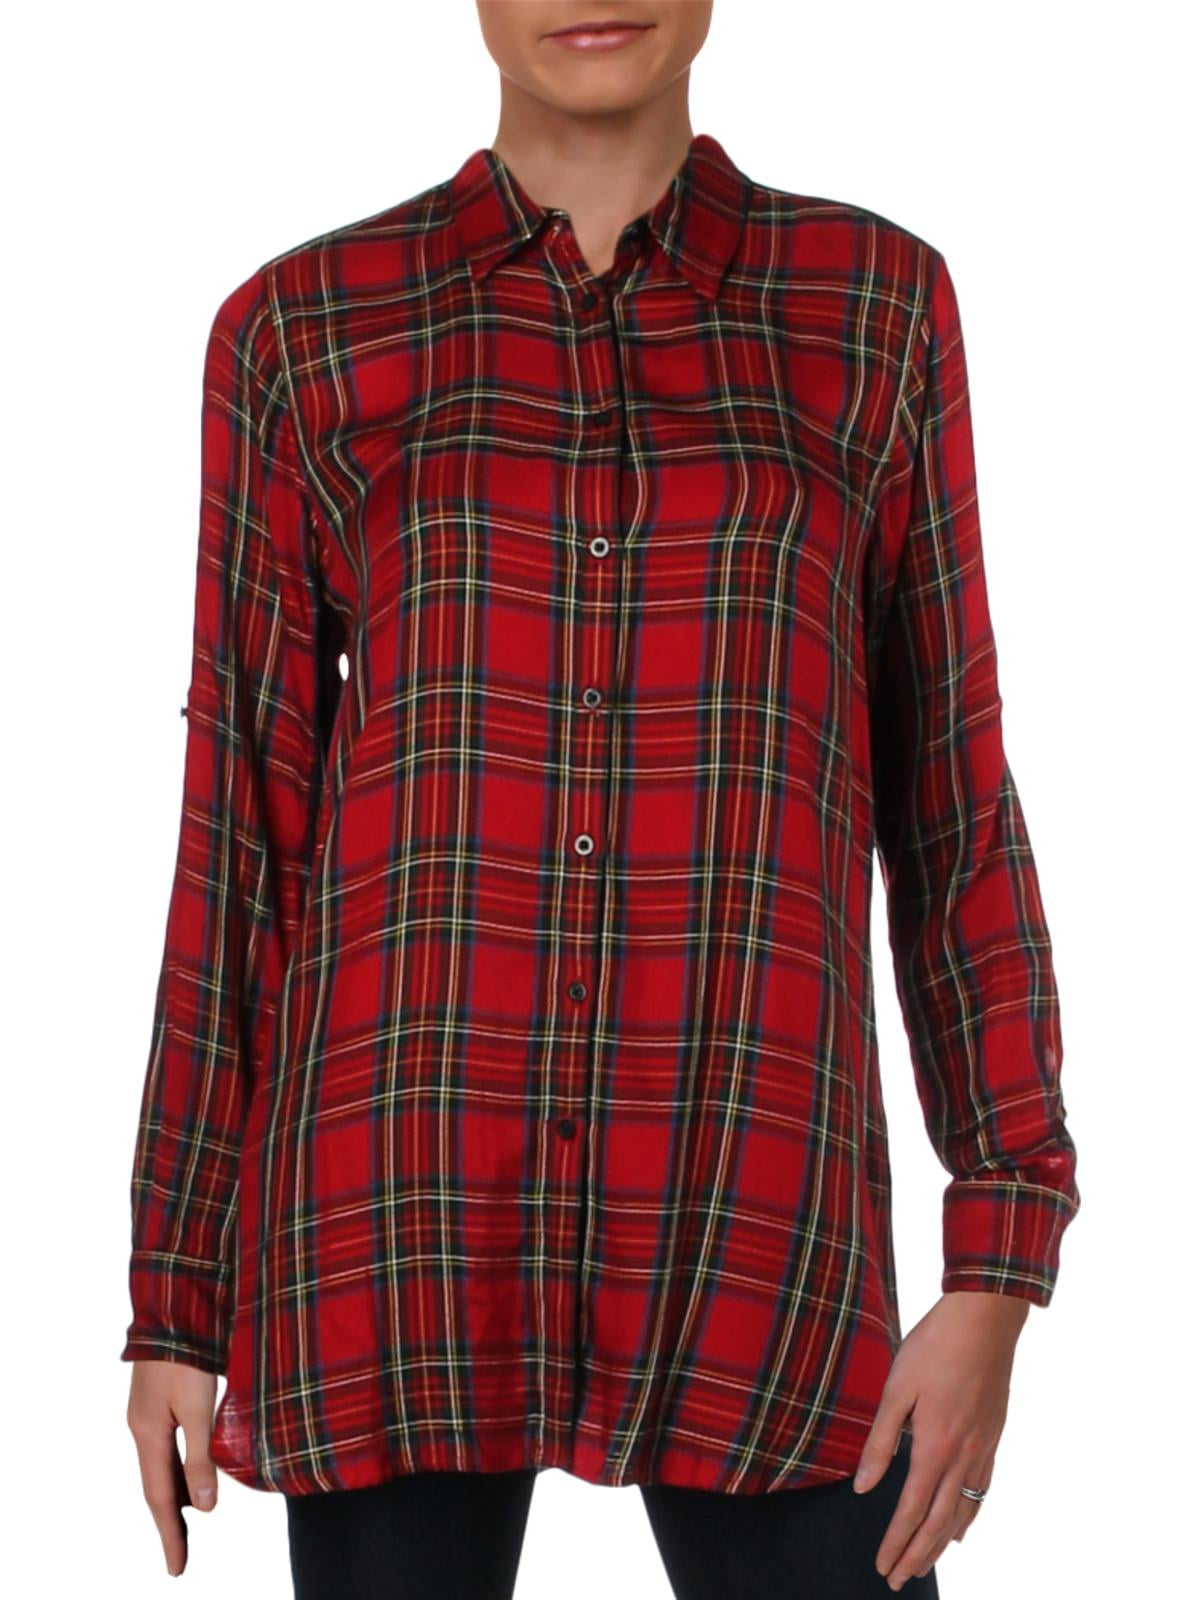 Ralph Lauren Womens Flannel Button Up Shirt, Red, Medium 